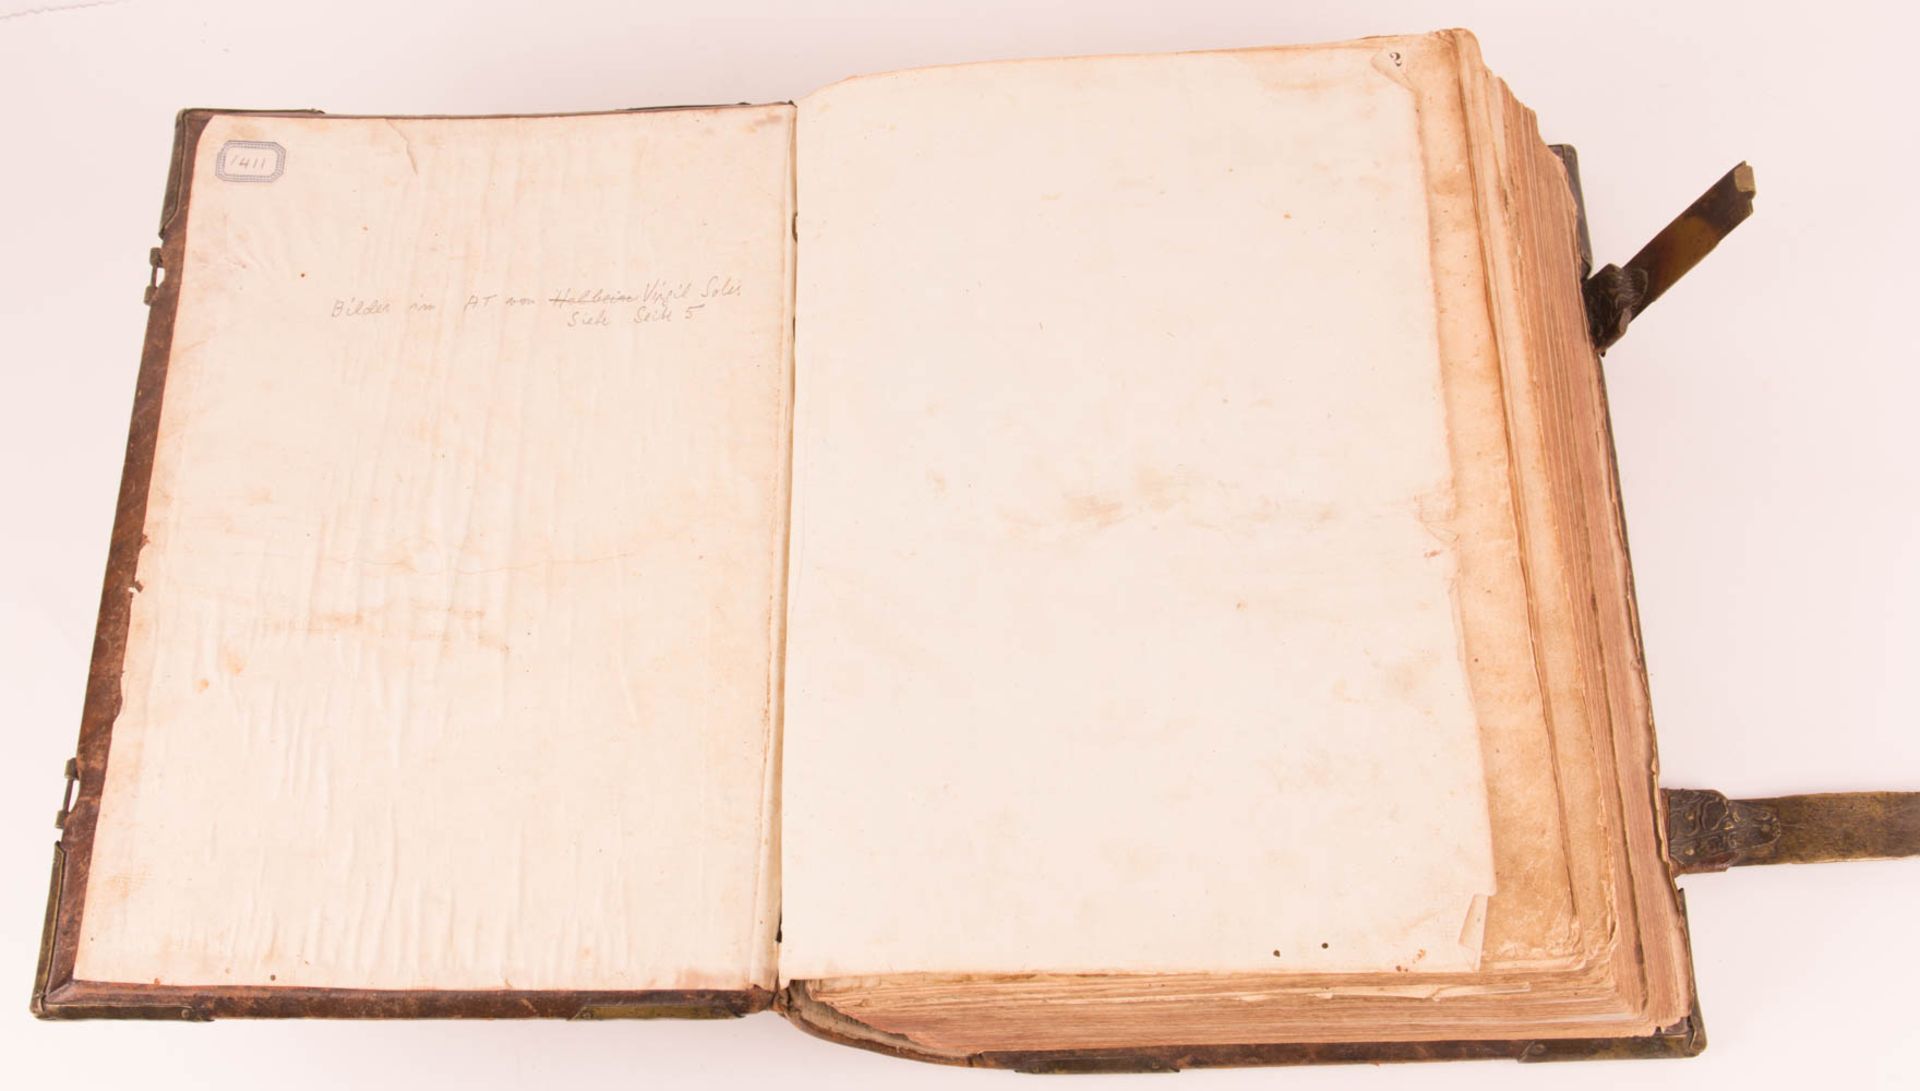 Biblia germanica - Froschauer Bibel, wohl mit Illustrationen von Virgil Solis Zürich, 1536. - Bild 16 aus 23